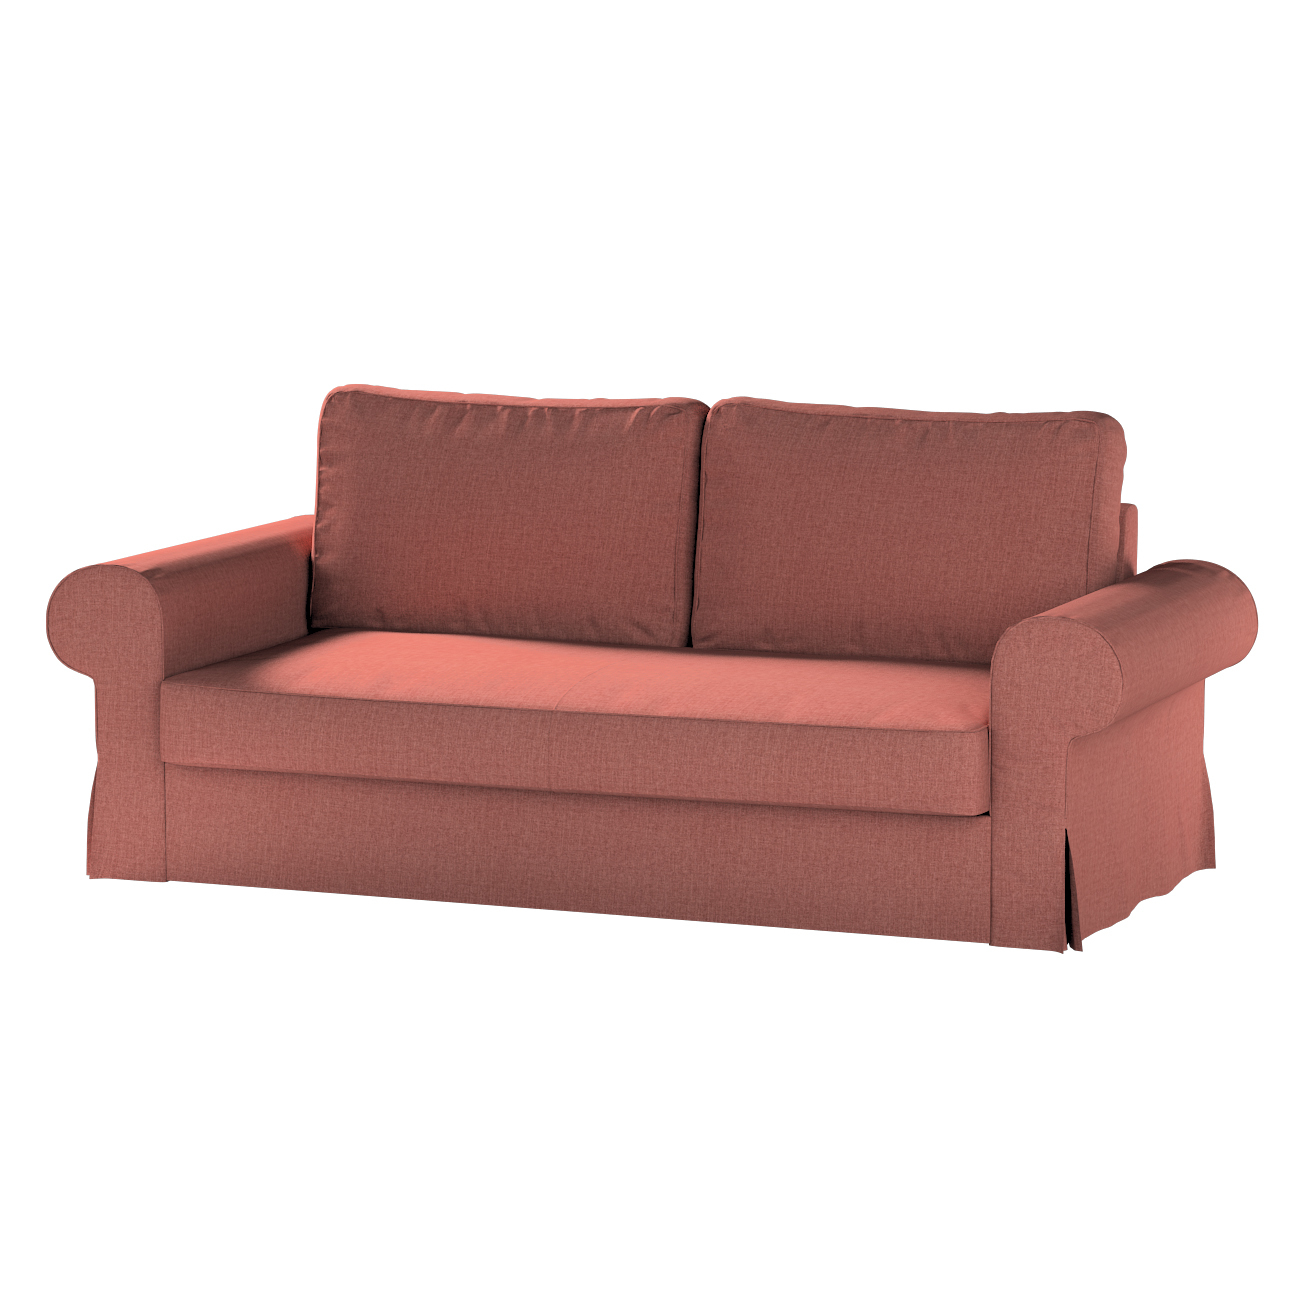 Bezug für Backabro 3-Sitzer Sofa ausklappbar, cognac braun, Bezug für Backa günstig online kaufen